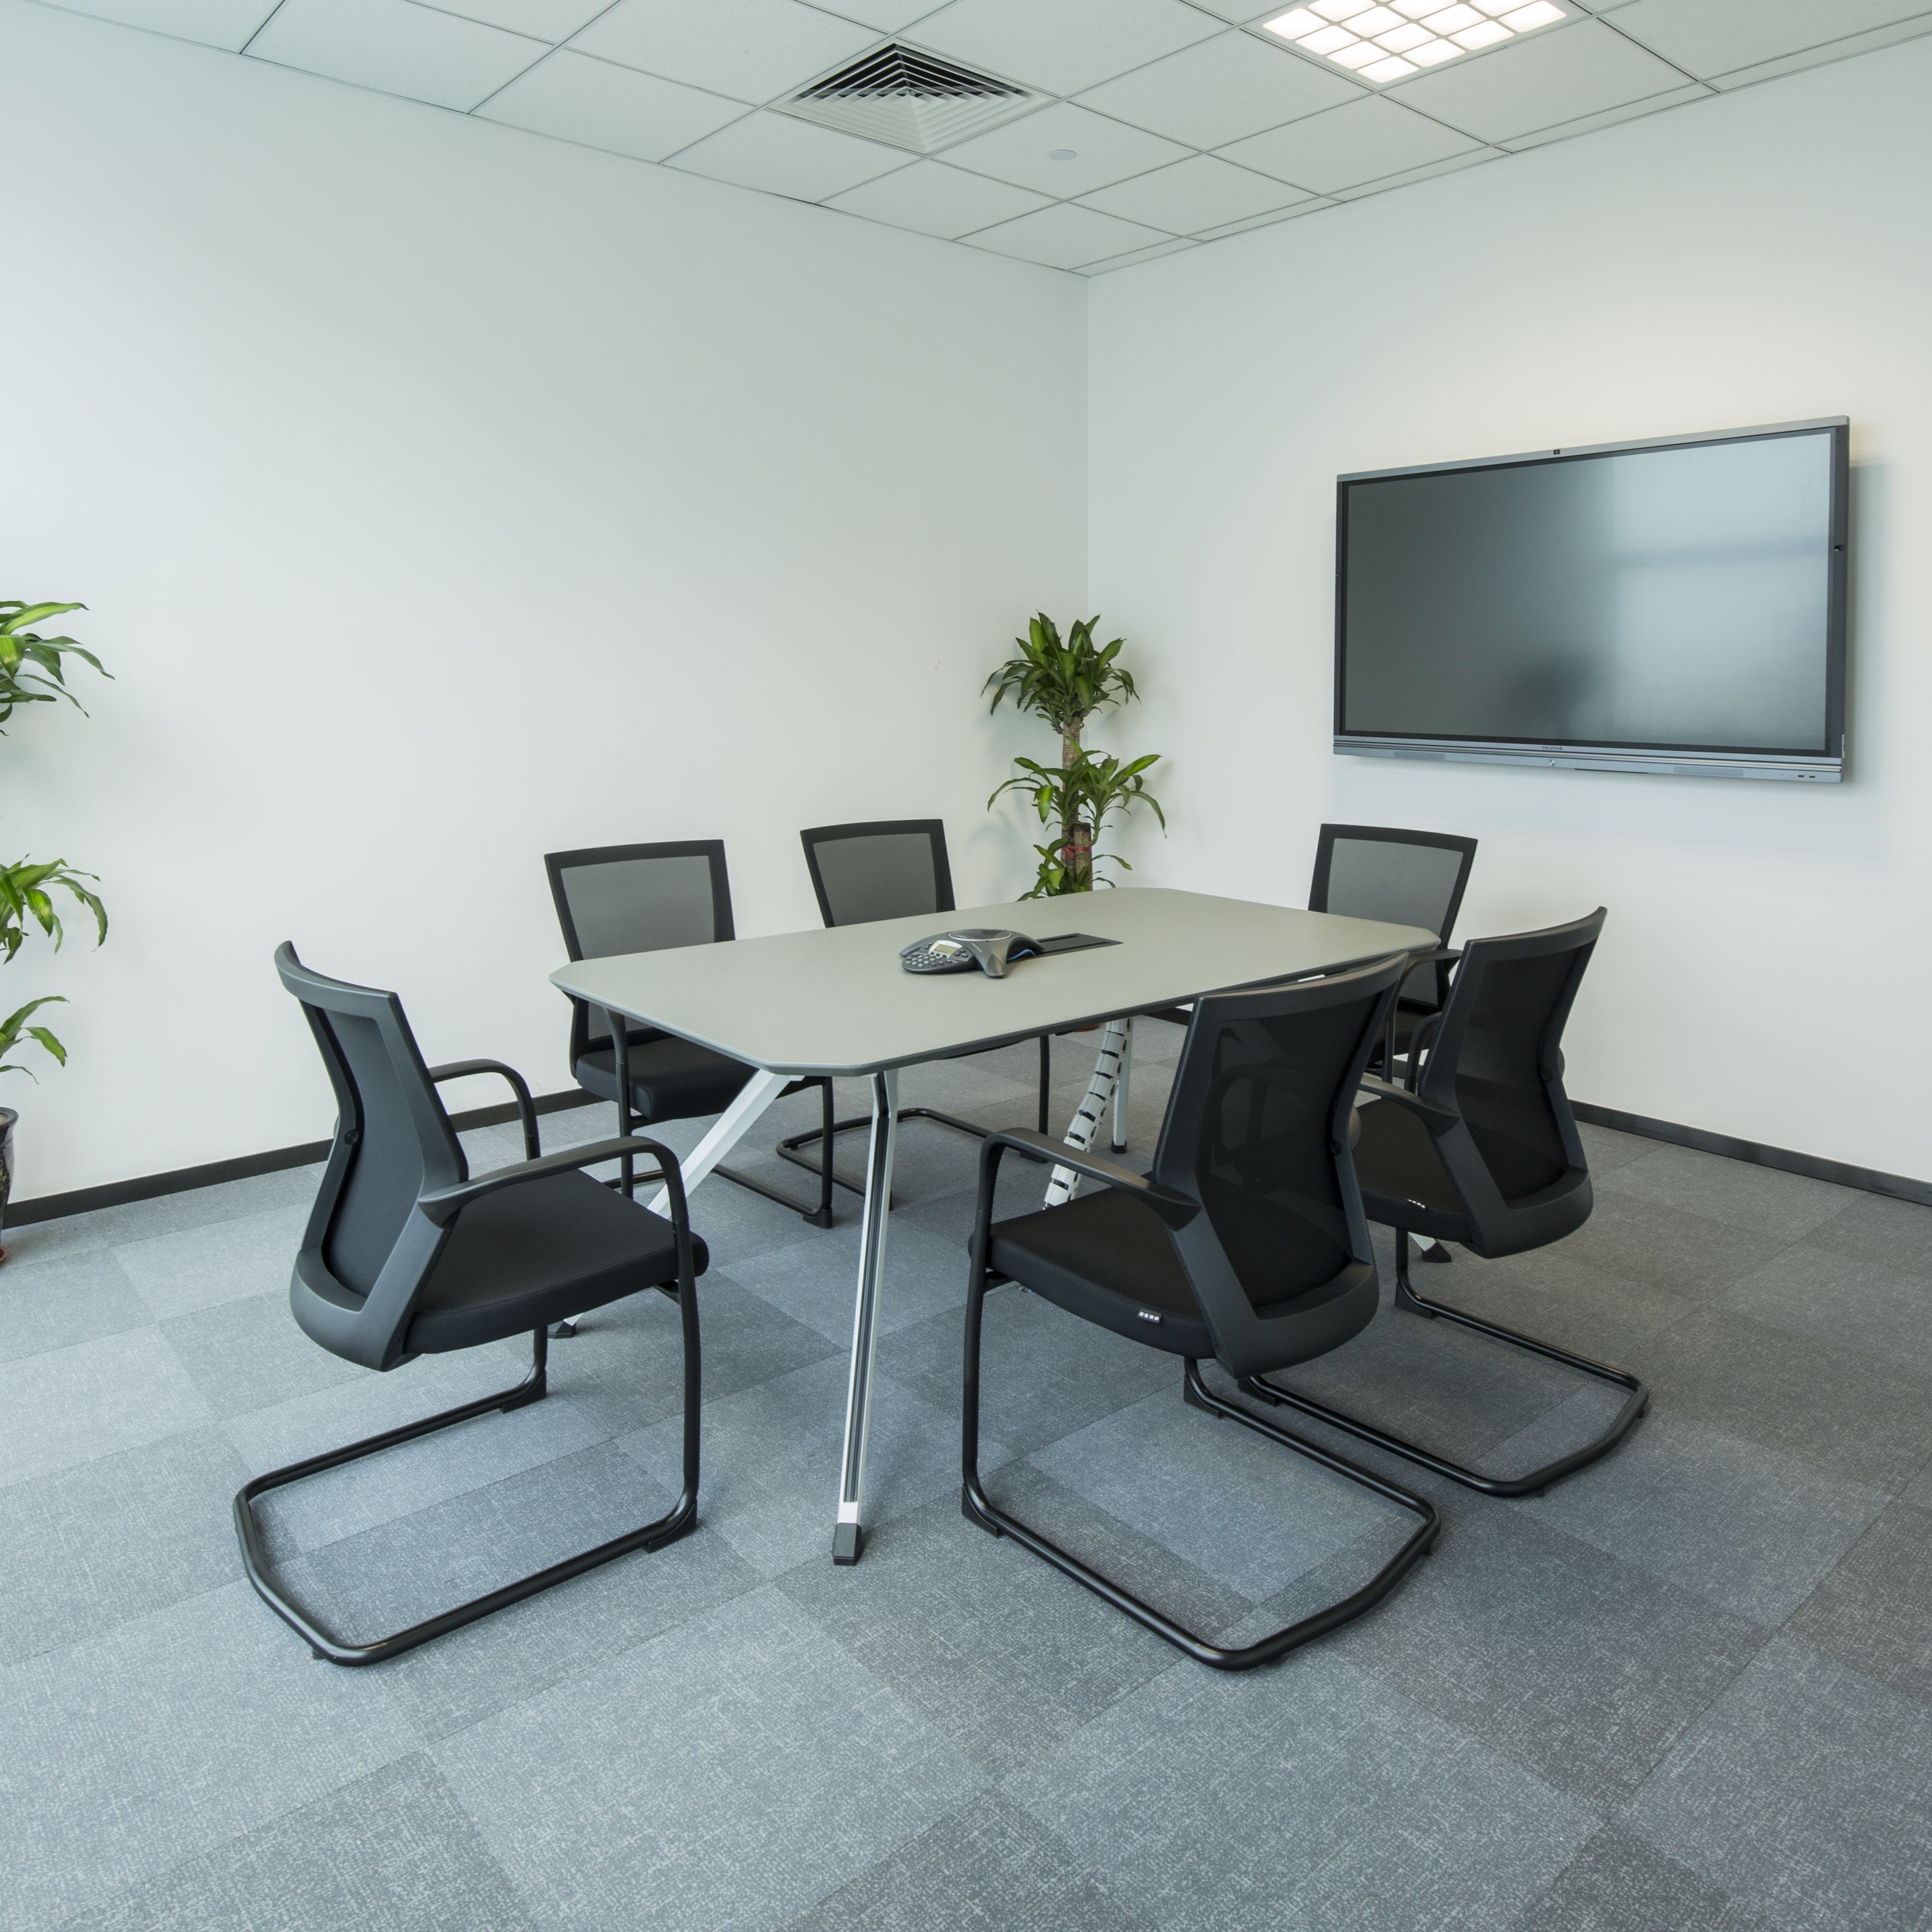 此会议室约20平米,会议室定位为6人小会议室,可以满足日常普通会议